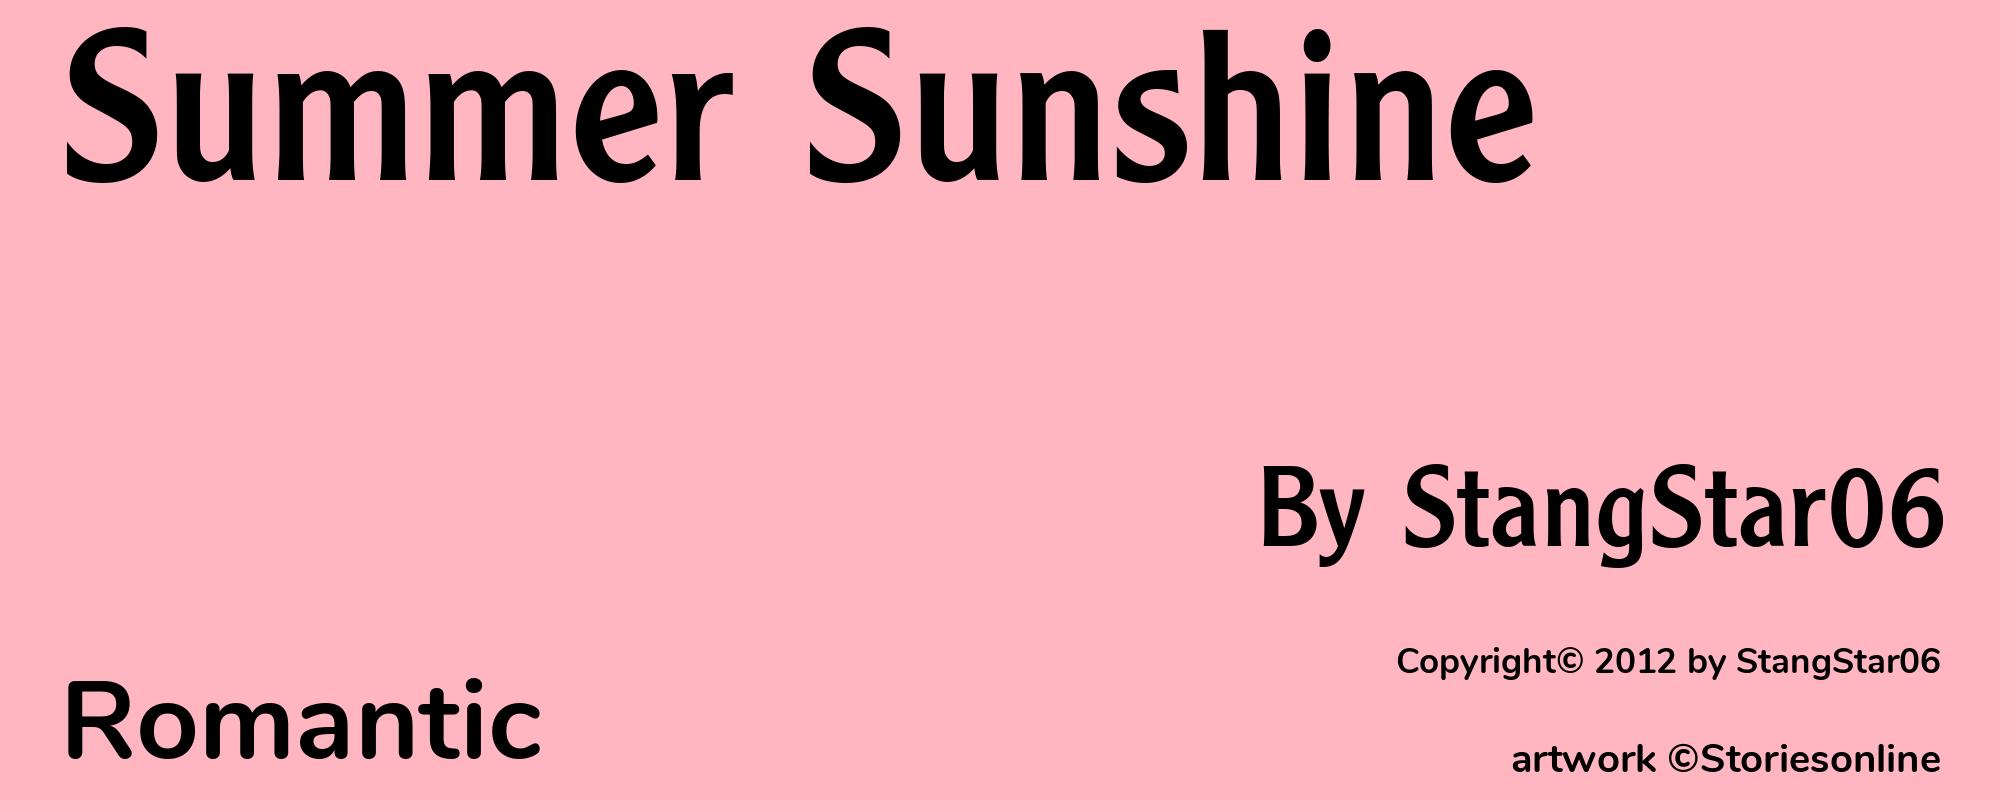 Summer Sunshine - Cover